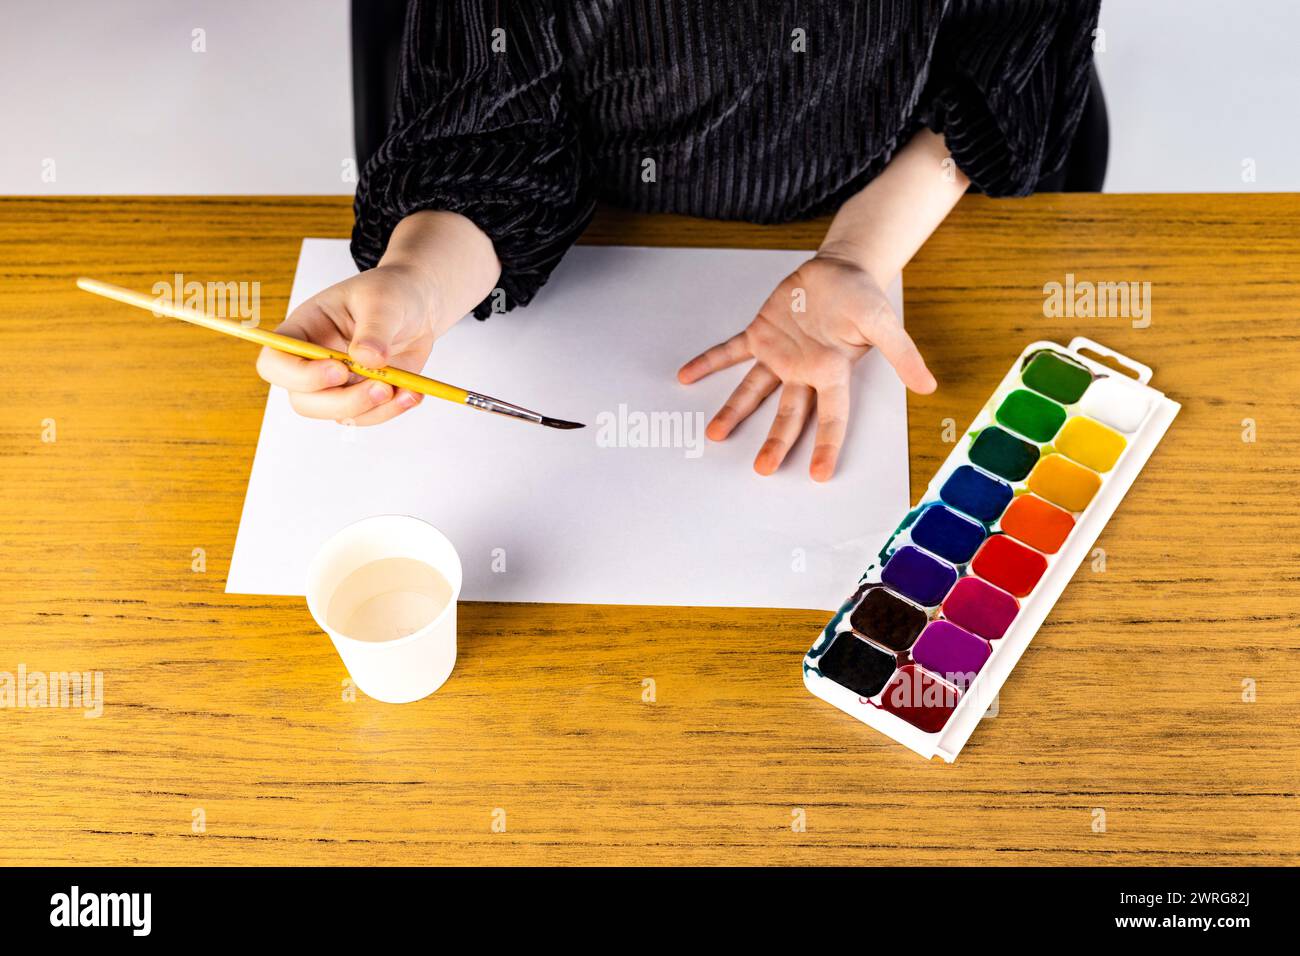 Eine Person hält mit ihrer Hand einen Pinsel, während sie auf ein Blatt Papier malt Stockfoto